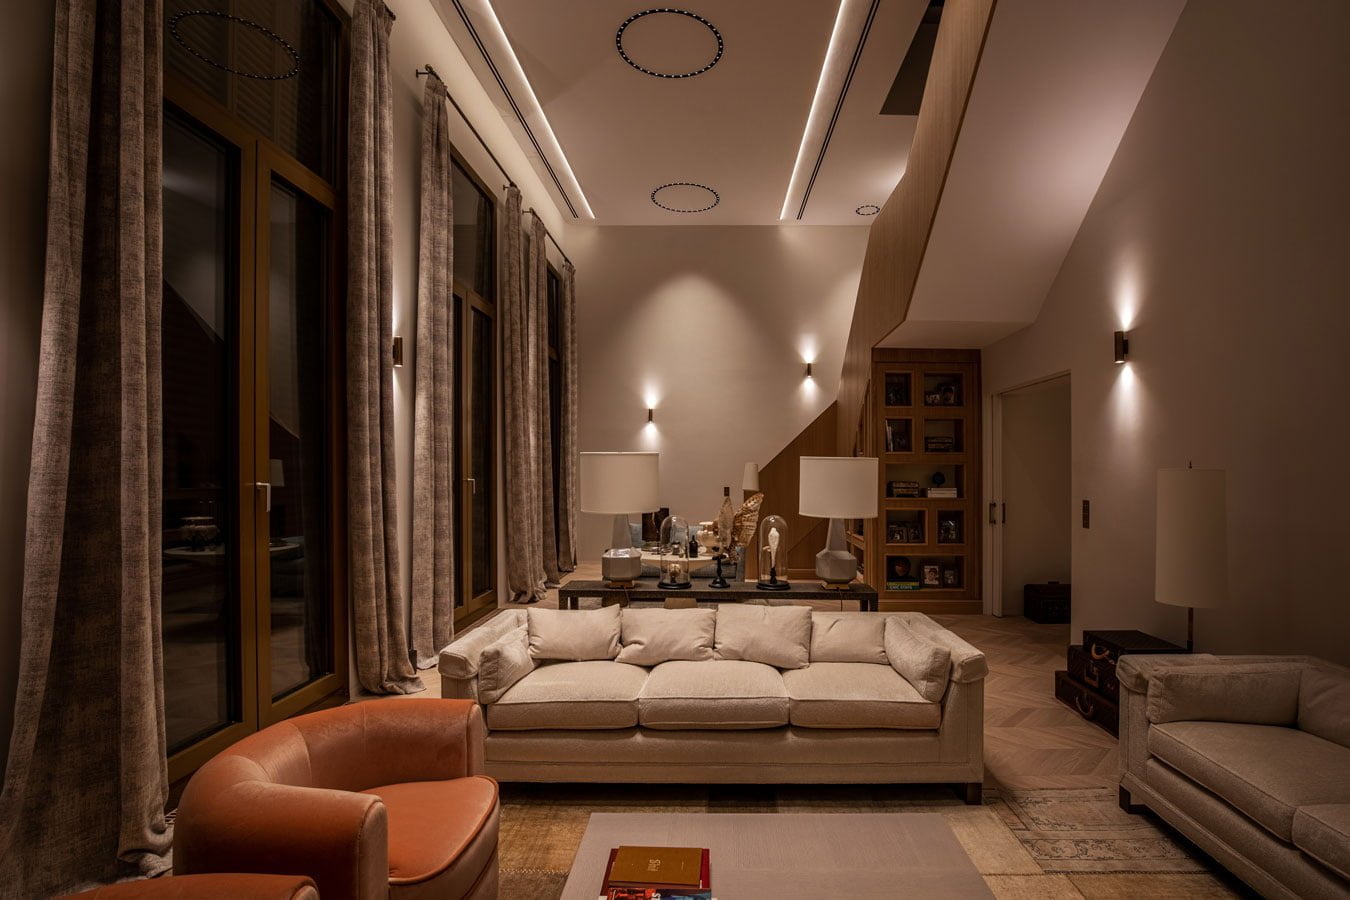 Iluminat interior rezidential - living room